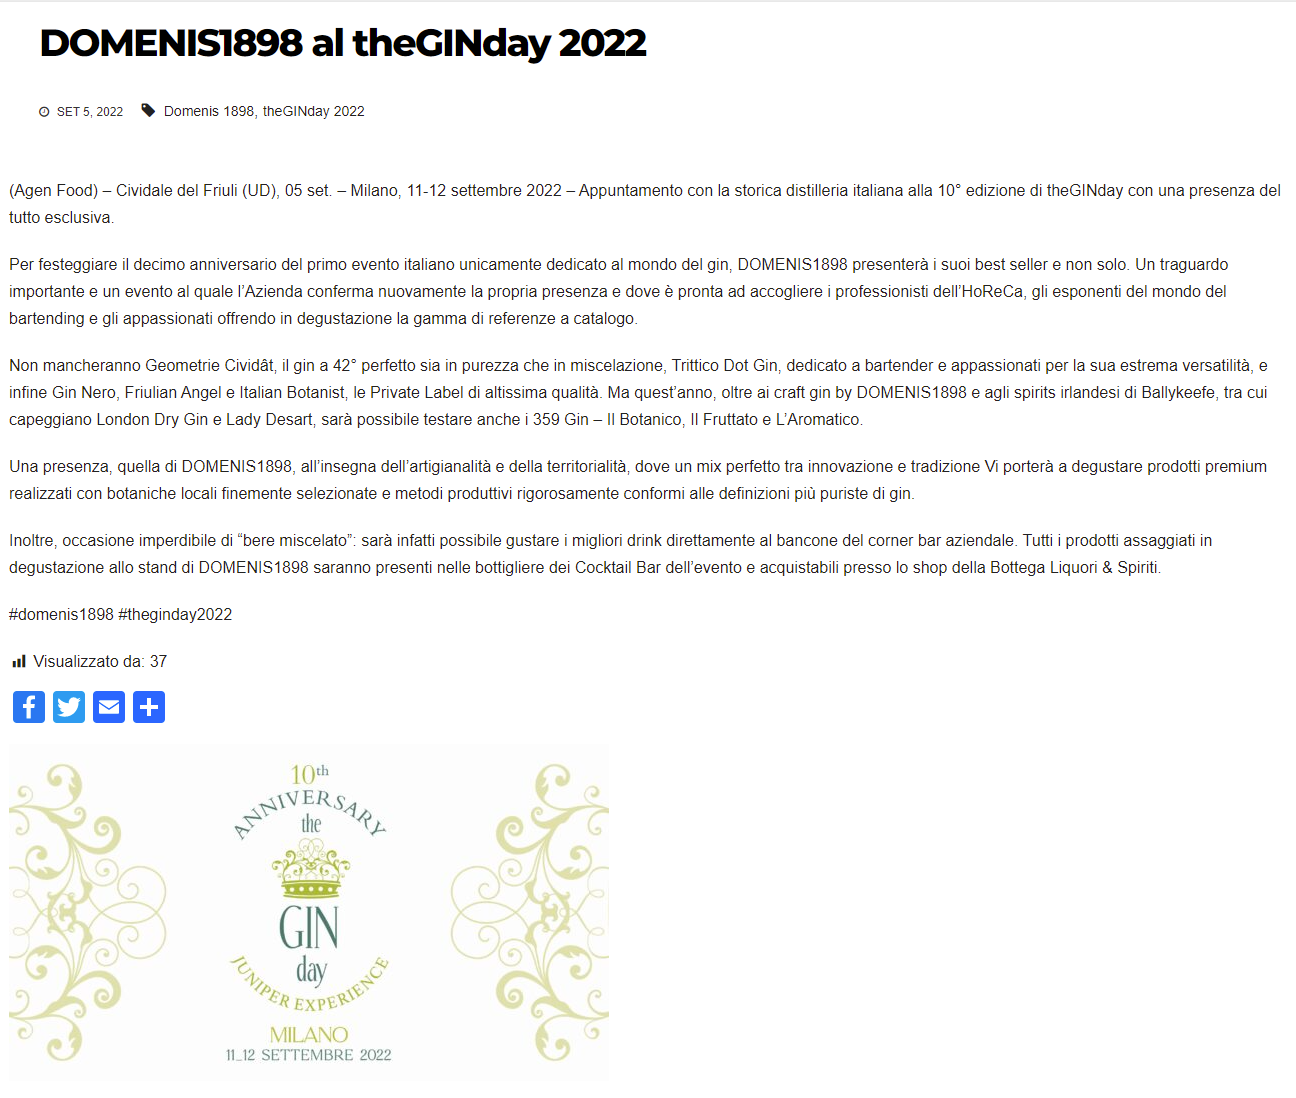 2022 settembre 05: Agenfood.it – DOMENIS1898 al theGINday 2022